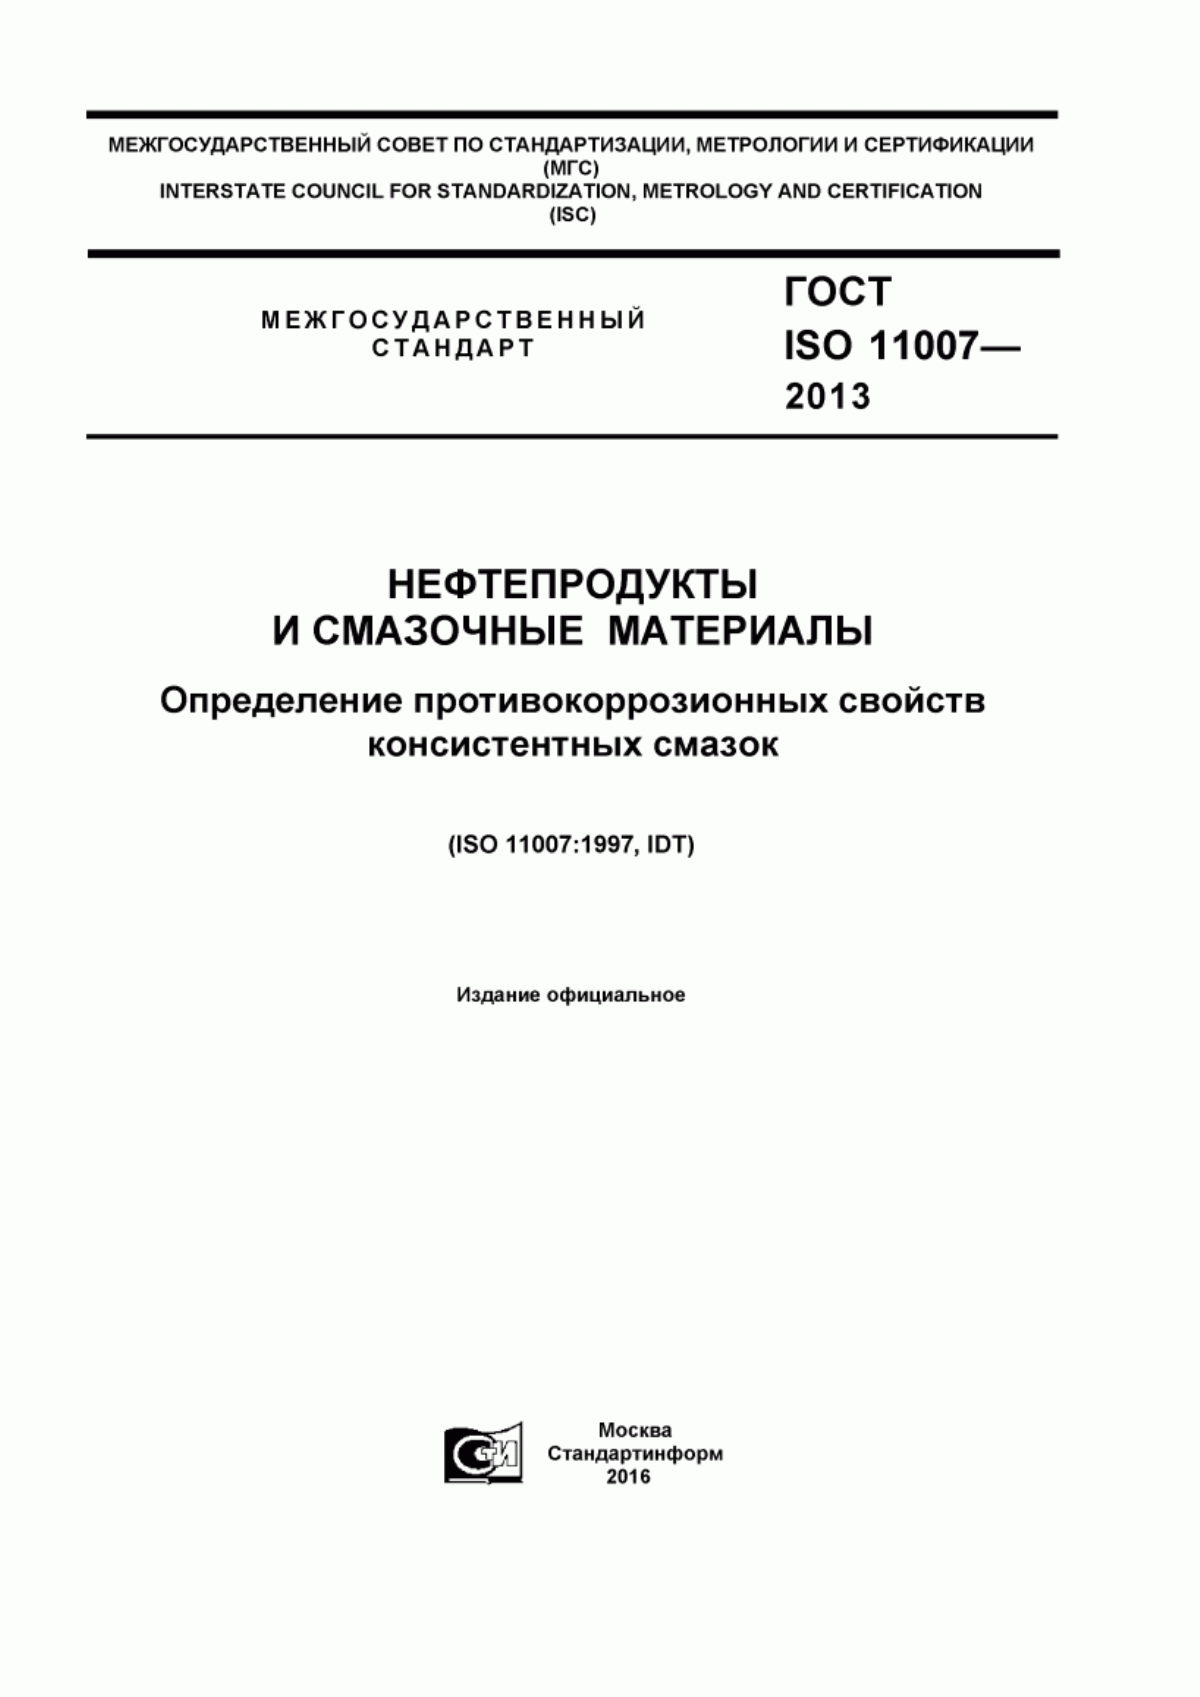 ГОСТ ISO 11007-2013 Нефтепродукты и смазочные материалы. Определение противокоррозионных свойств консистентных смазок